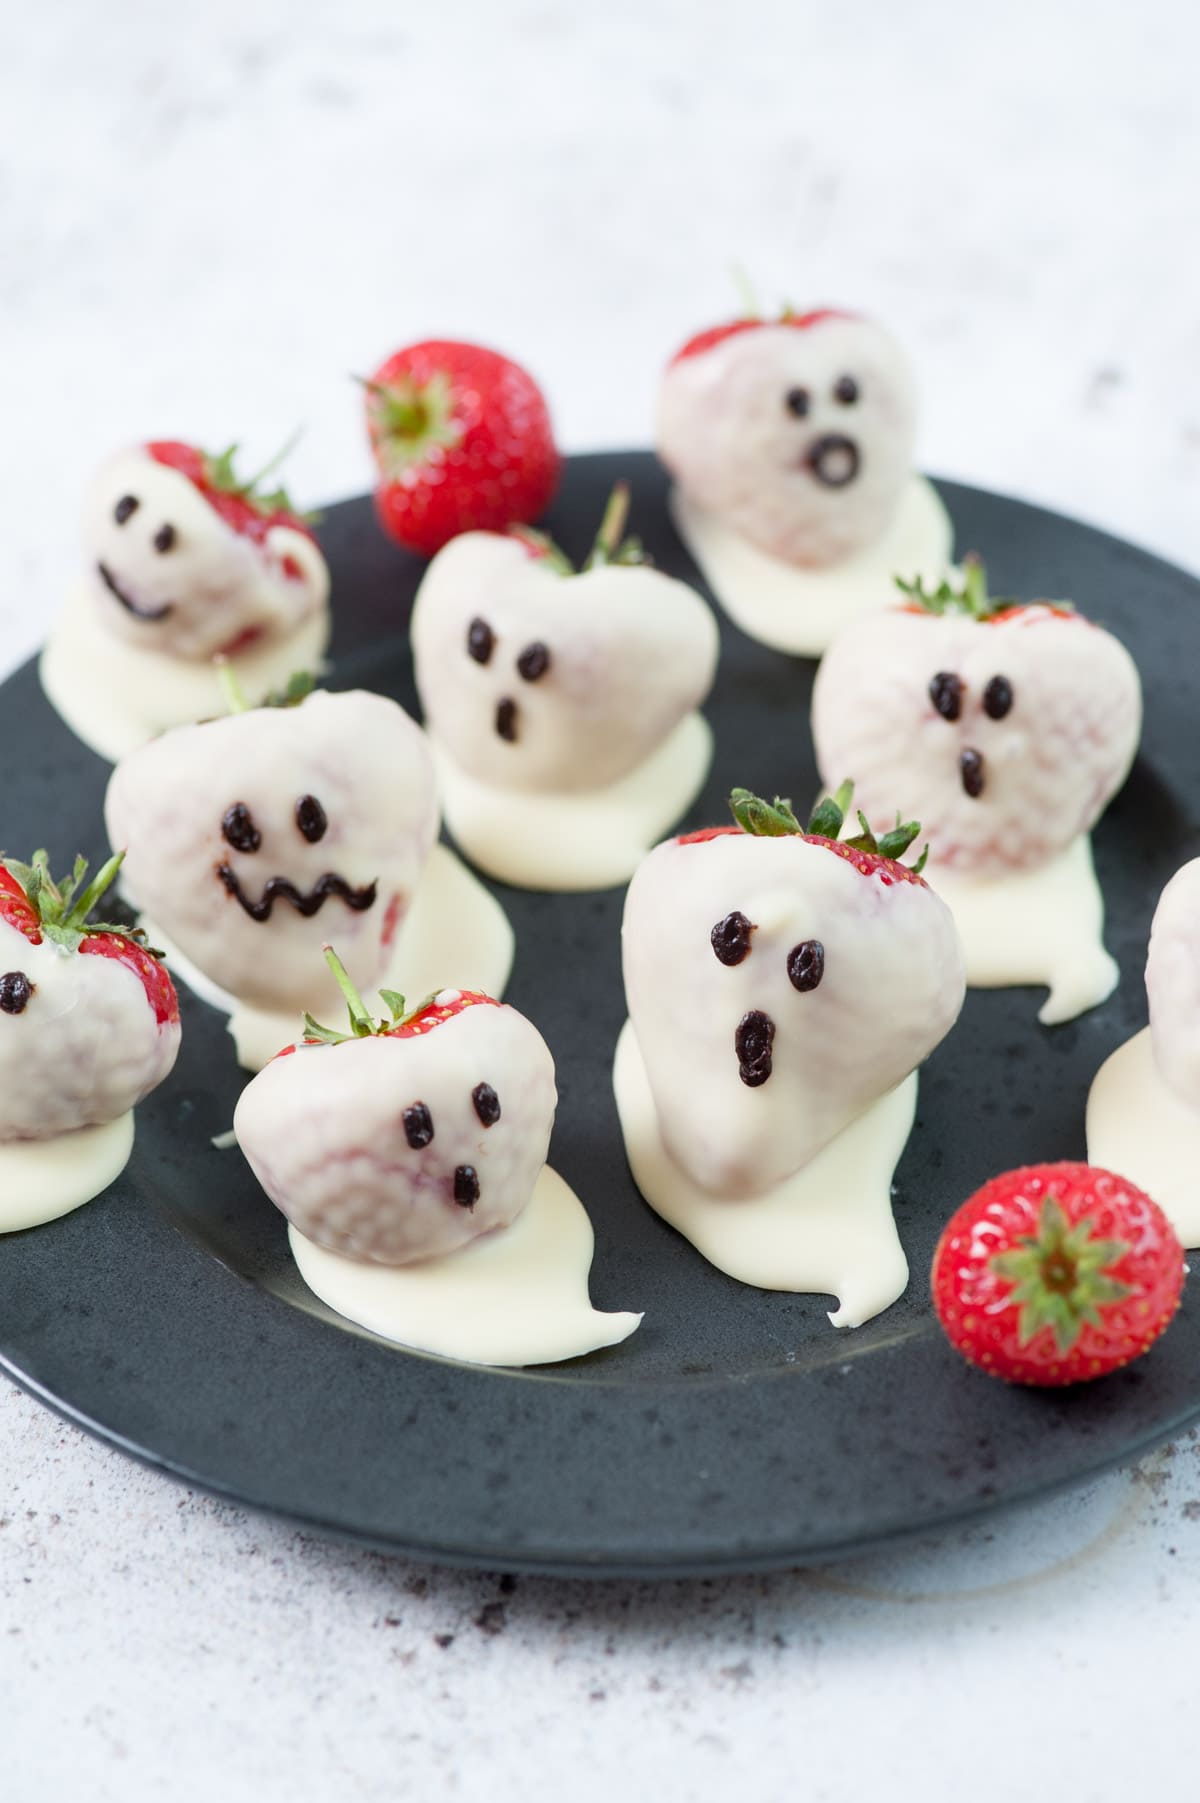 Halloween Chocolate-Covered Strawberries Recipe